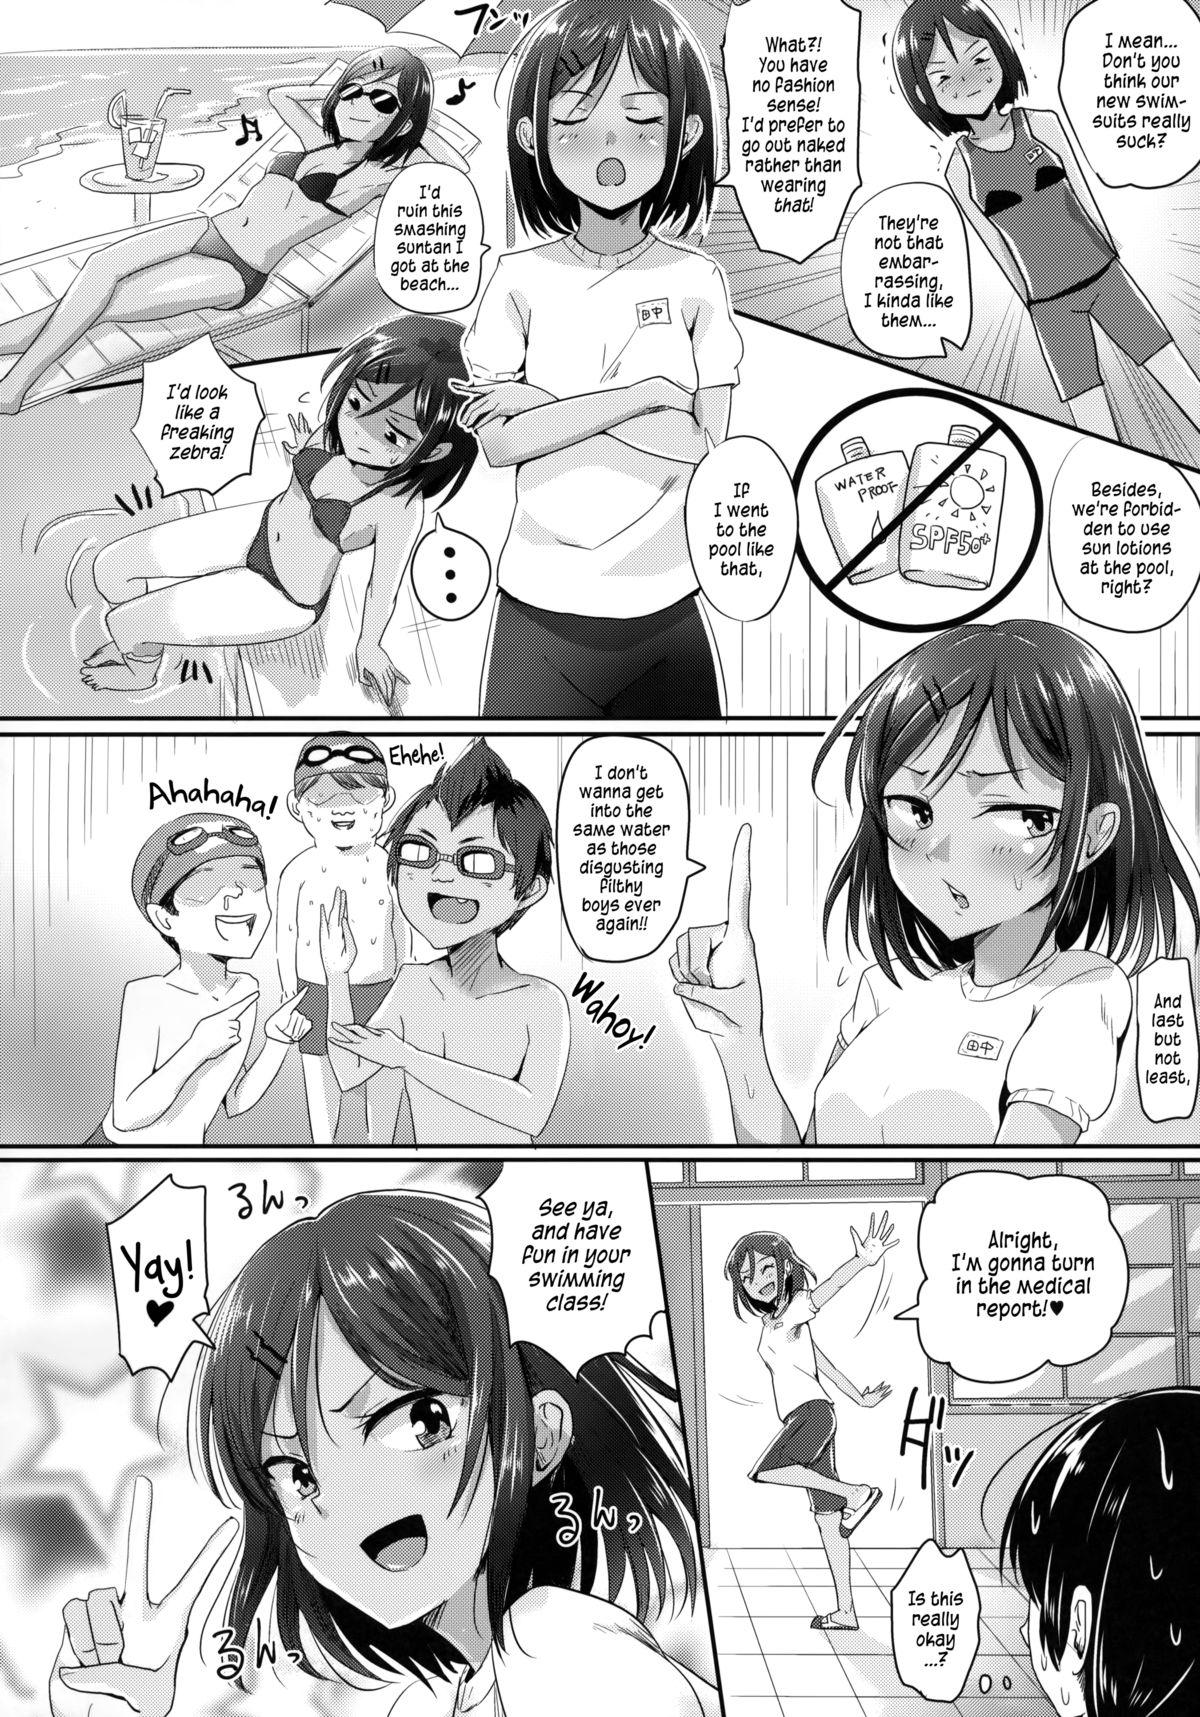 Step Zenra de Suiei no Jugyou!! | Naked Swimming Class!! Hot Girl Fuck - Page 3